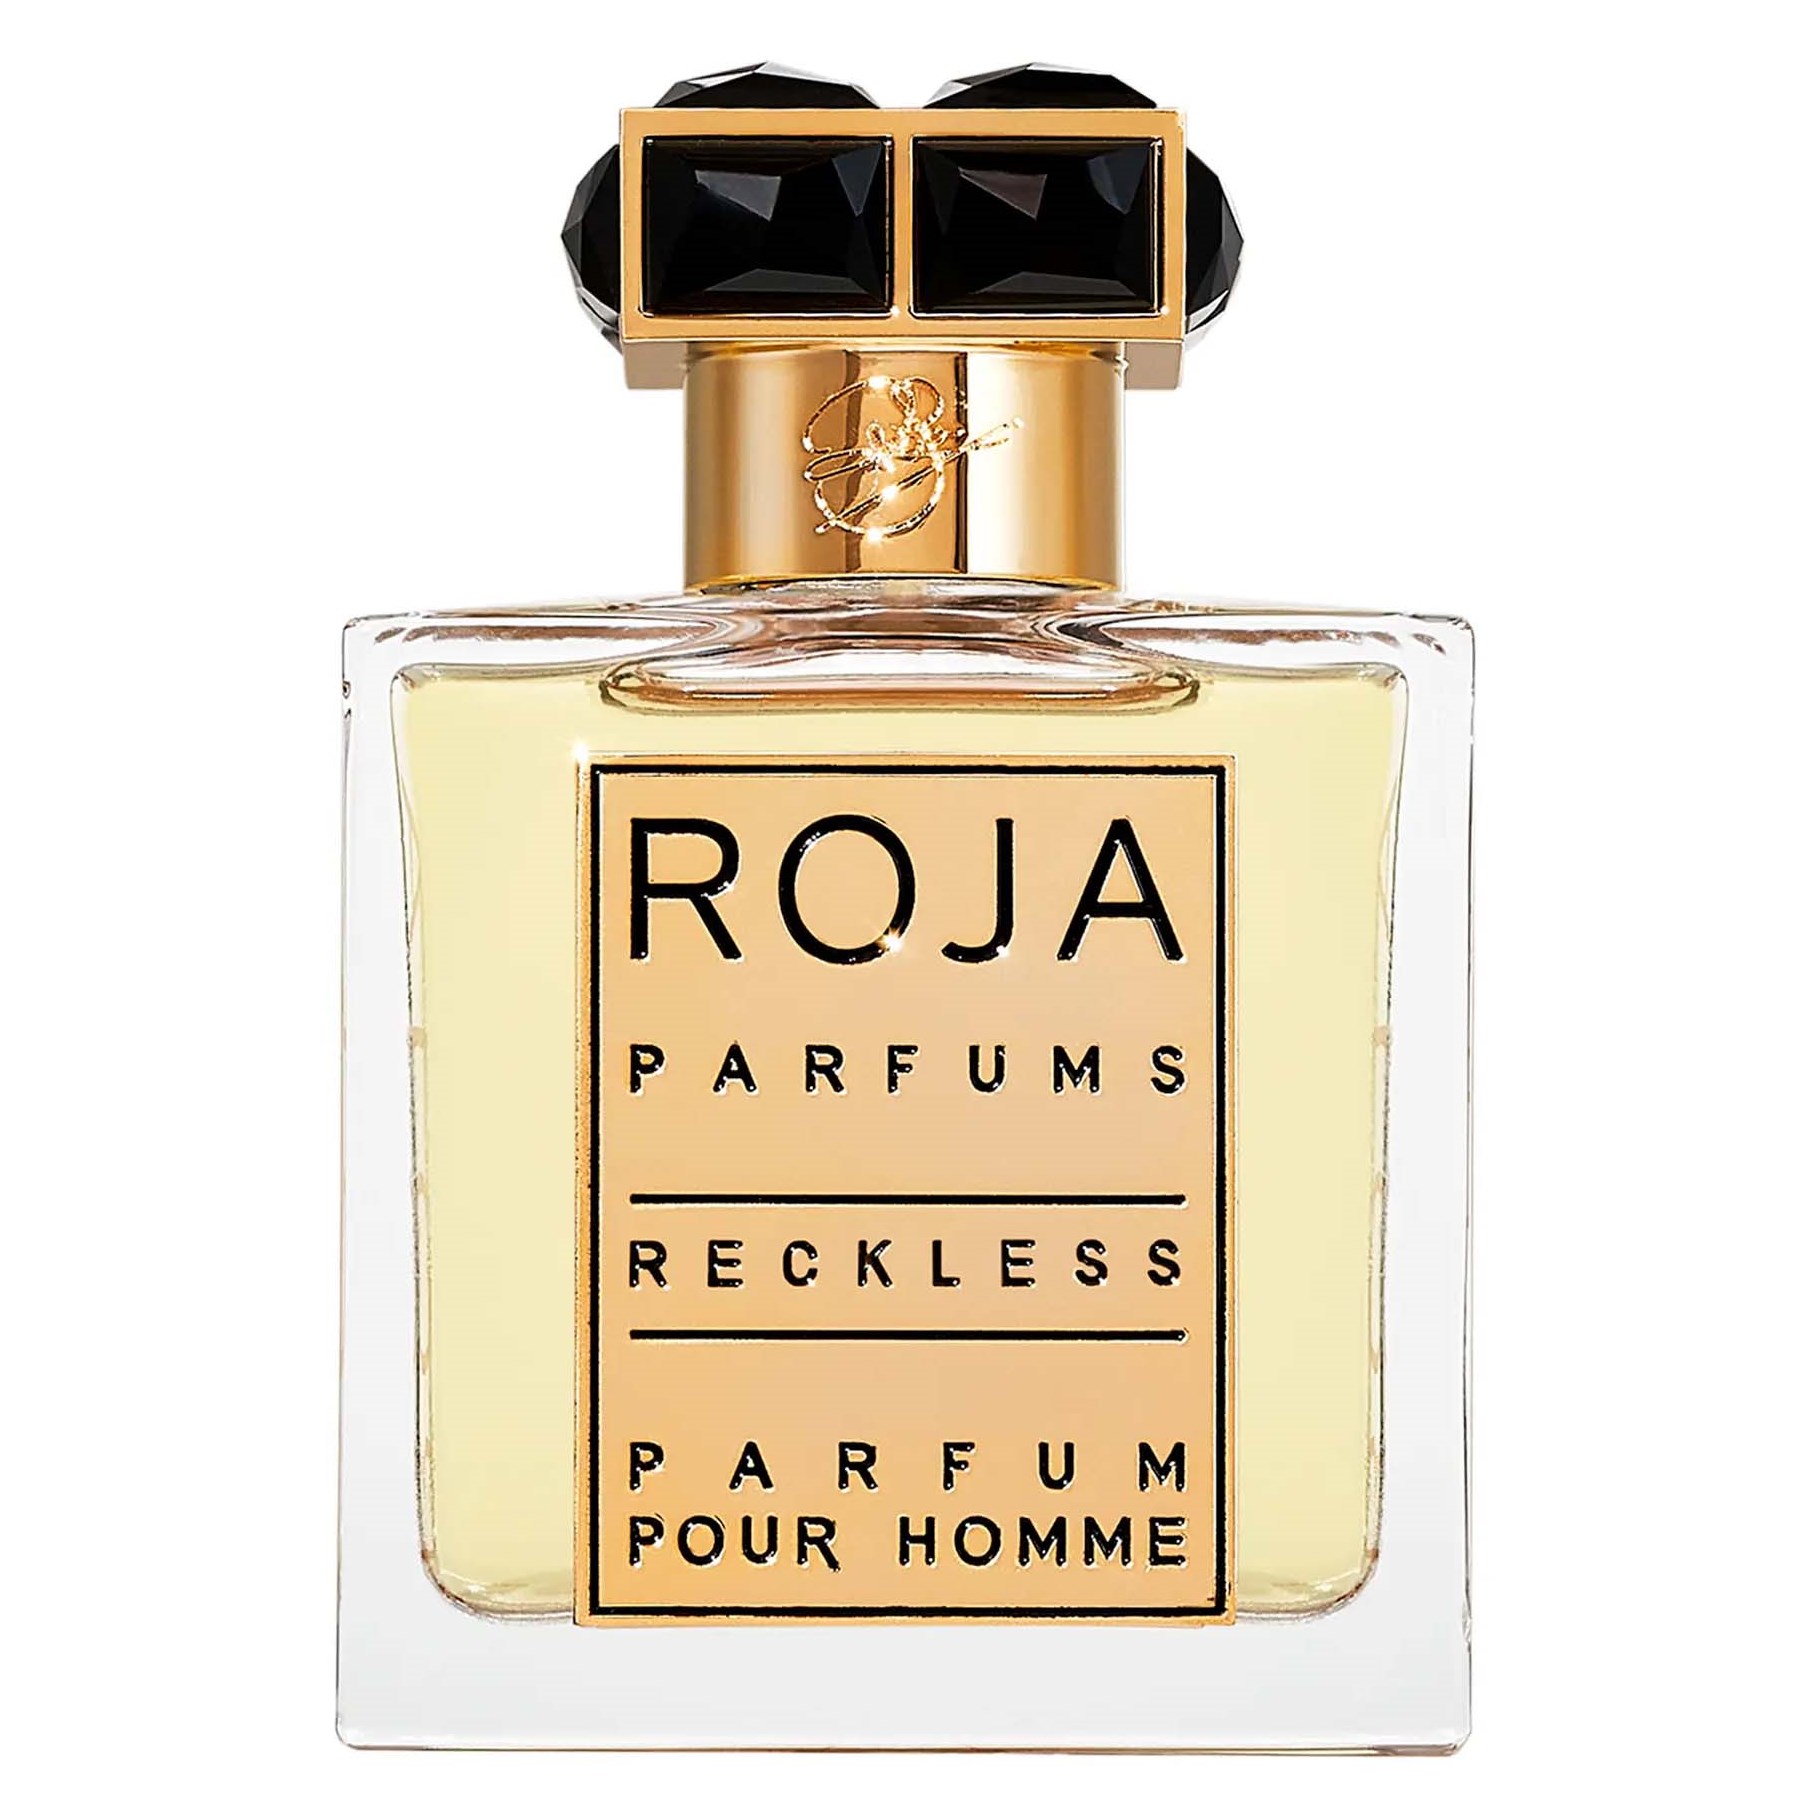 ROJA Reckless Pour Homme Parfum 50 ml